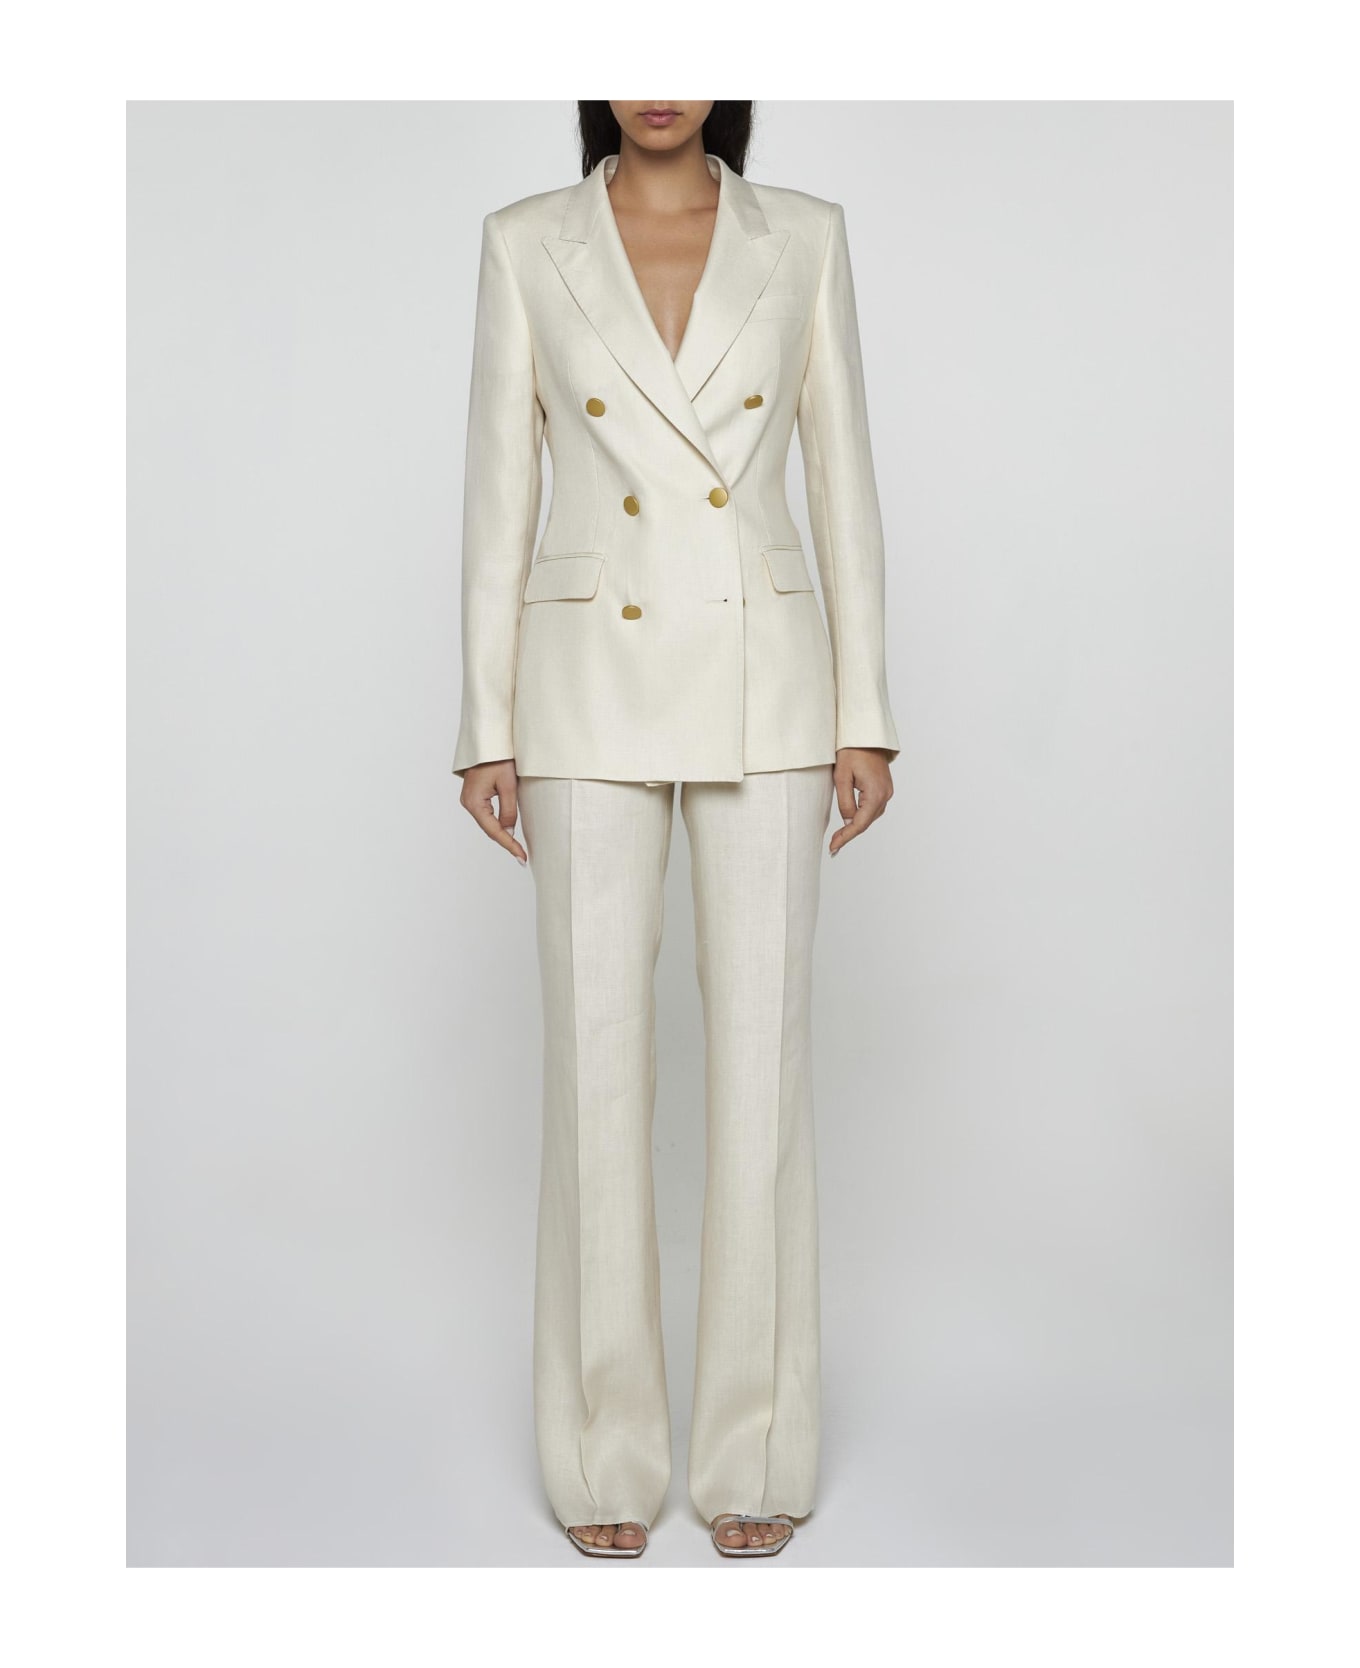 Tagliatore Parigi Linen Suit - Cream